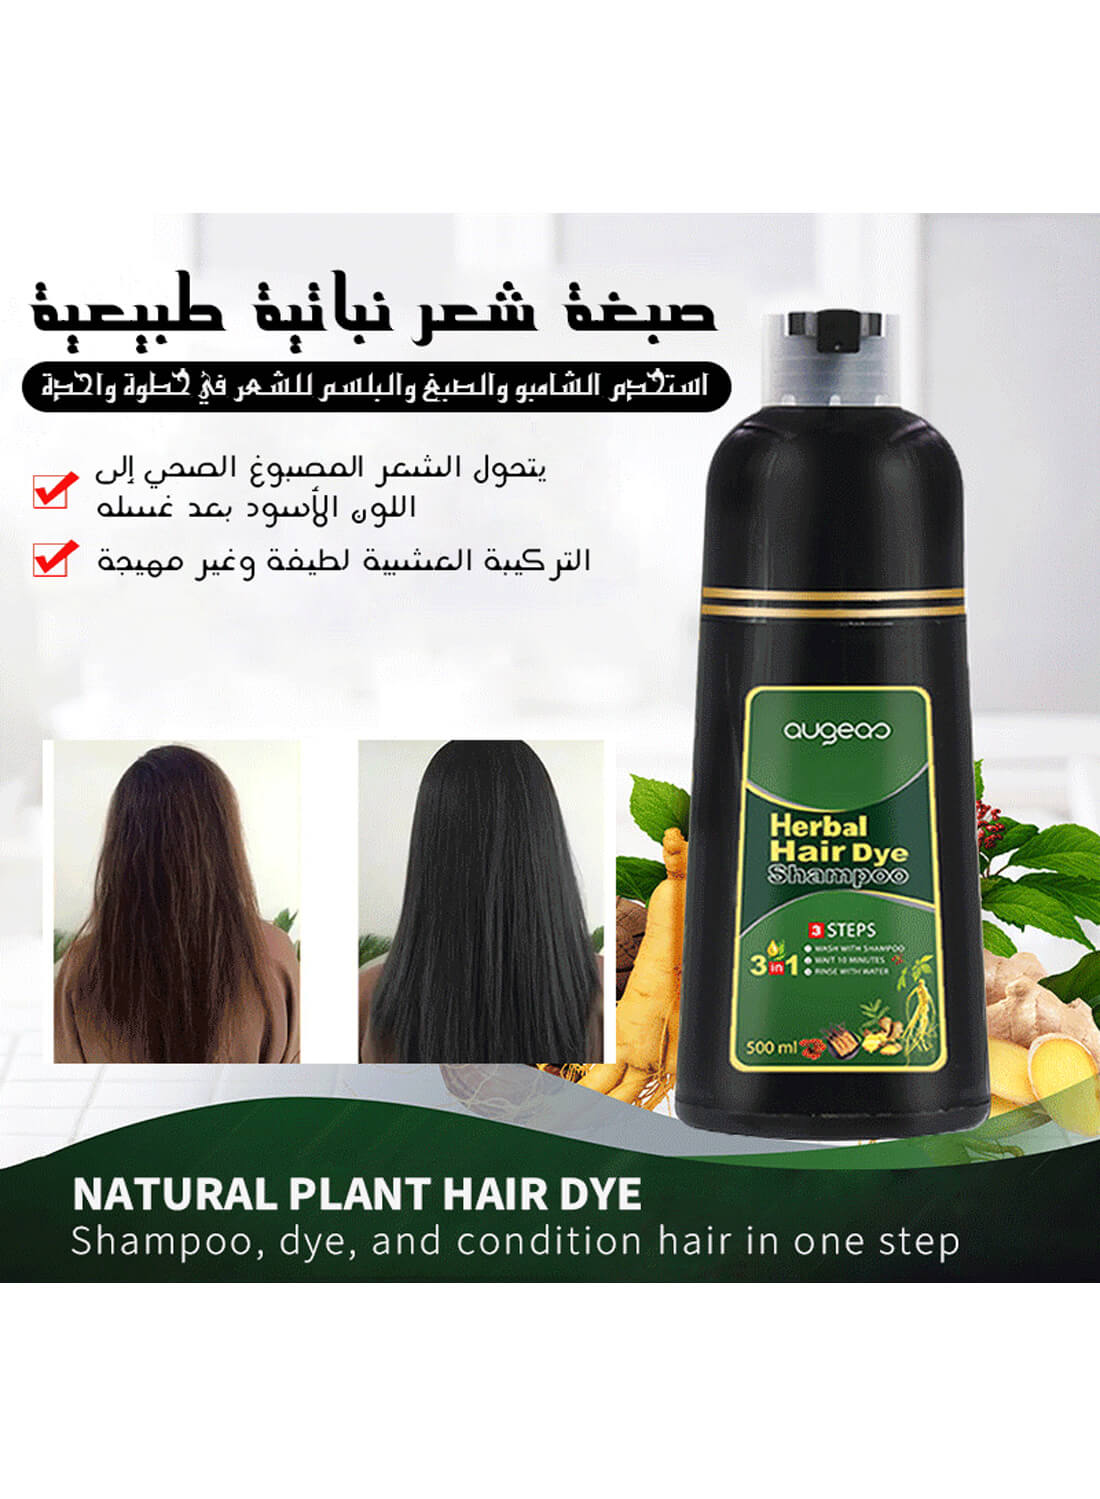 Augeas Herbal Hair Darkening Shampoo 500ml